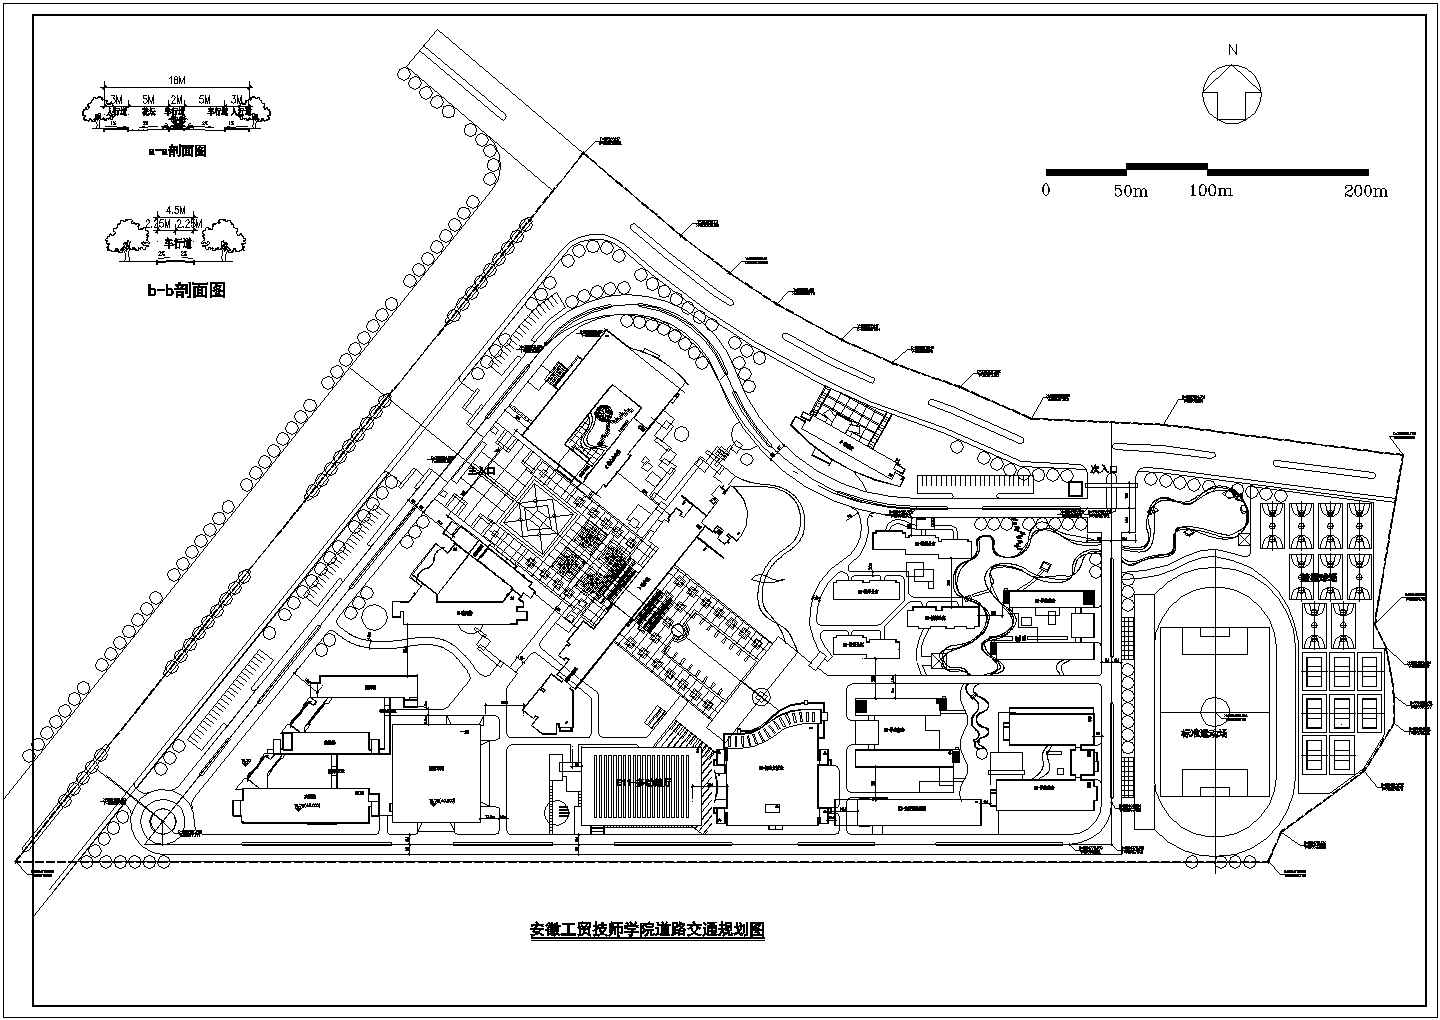 马鞍山工贸技工学校CAD建筑设计总体规划